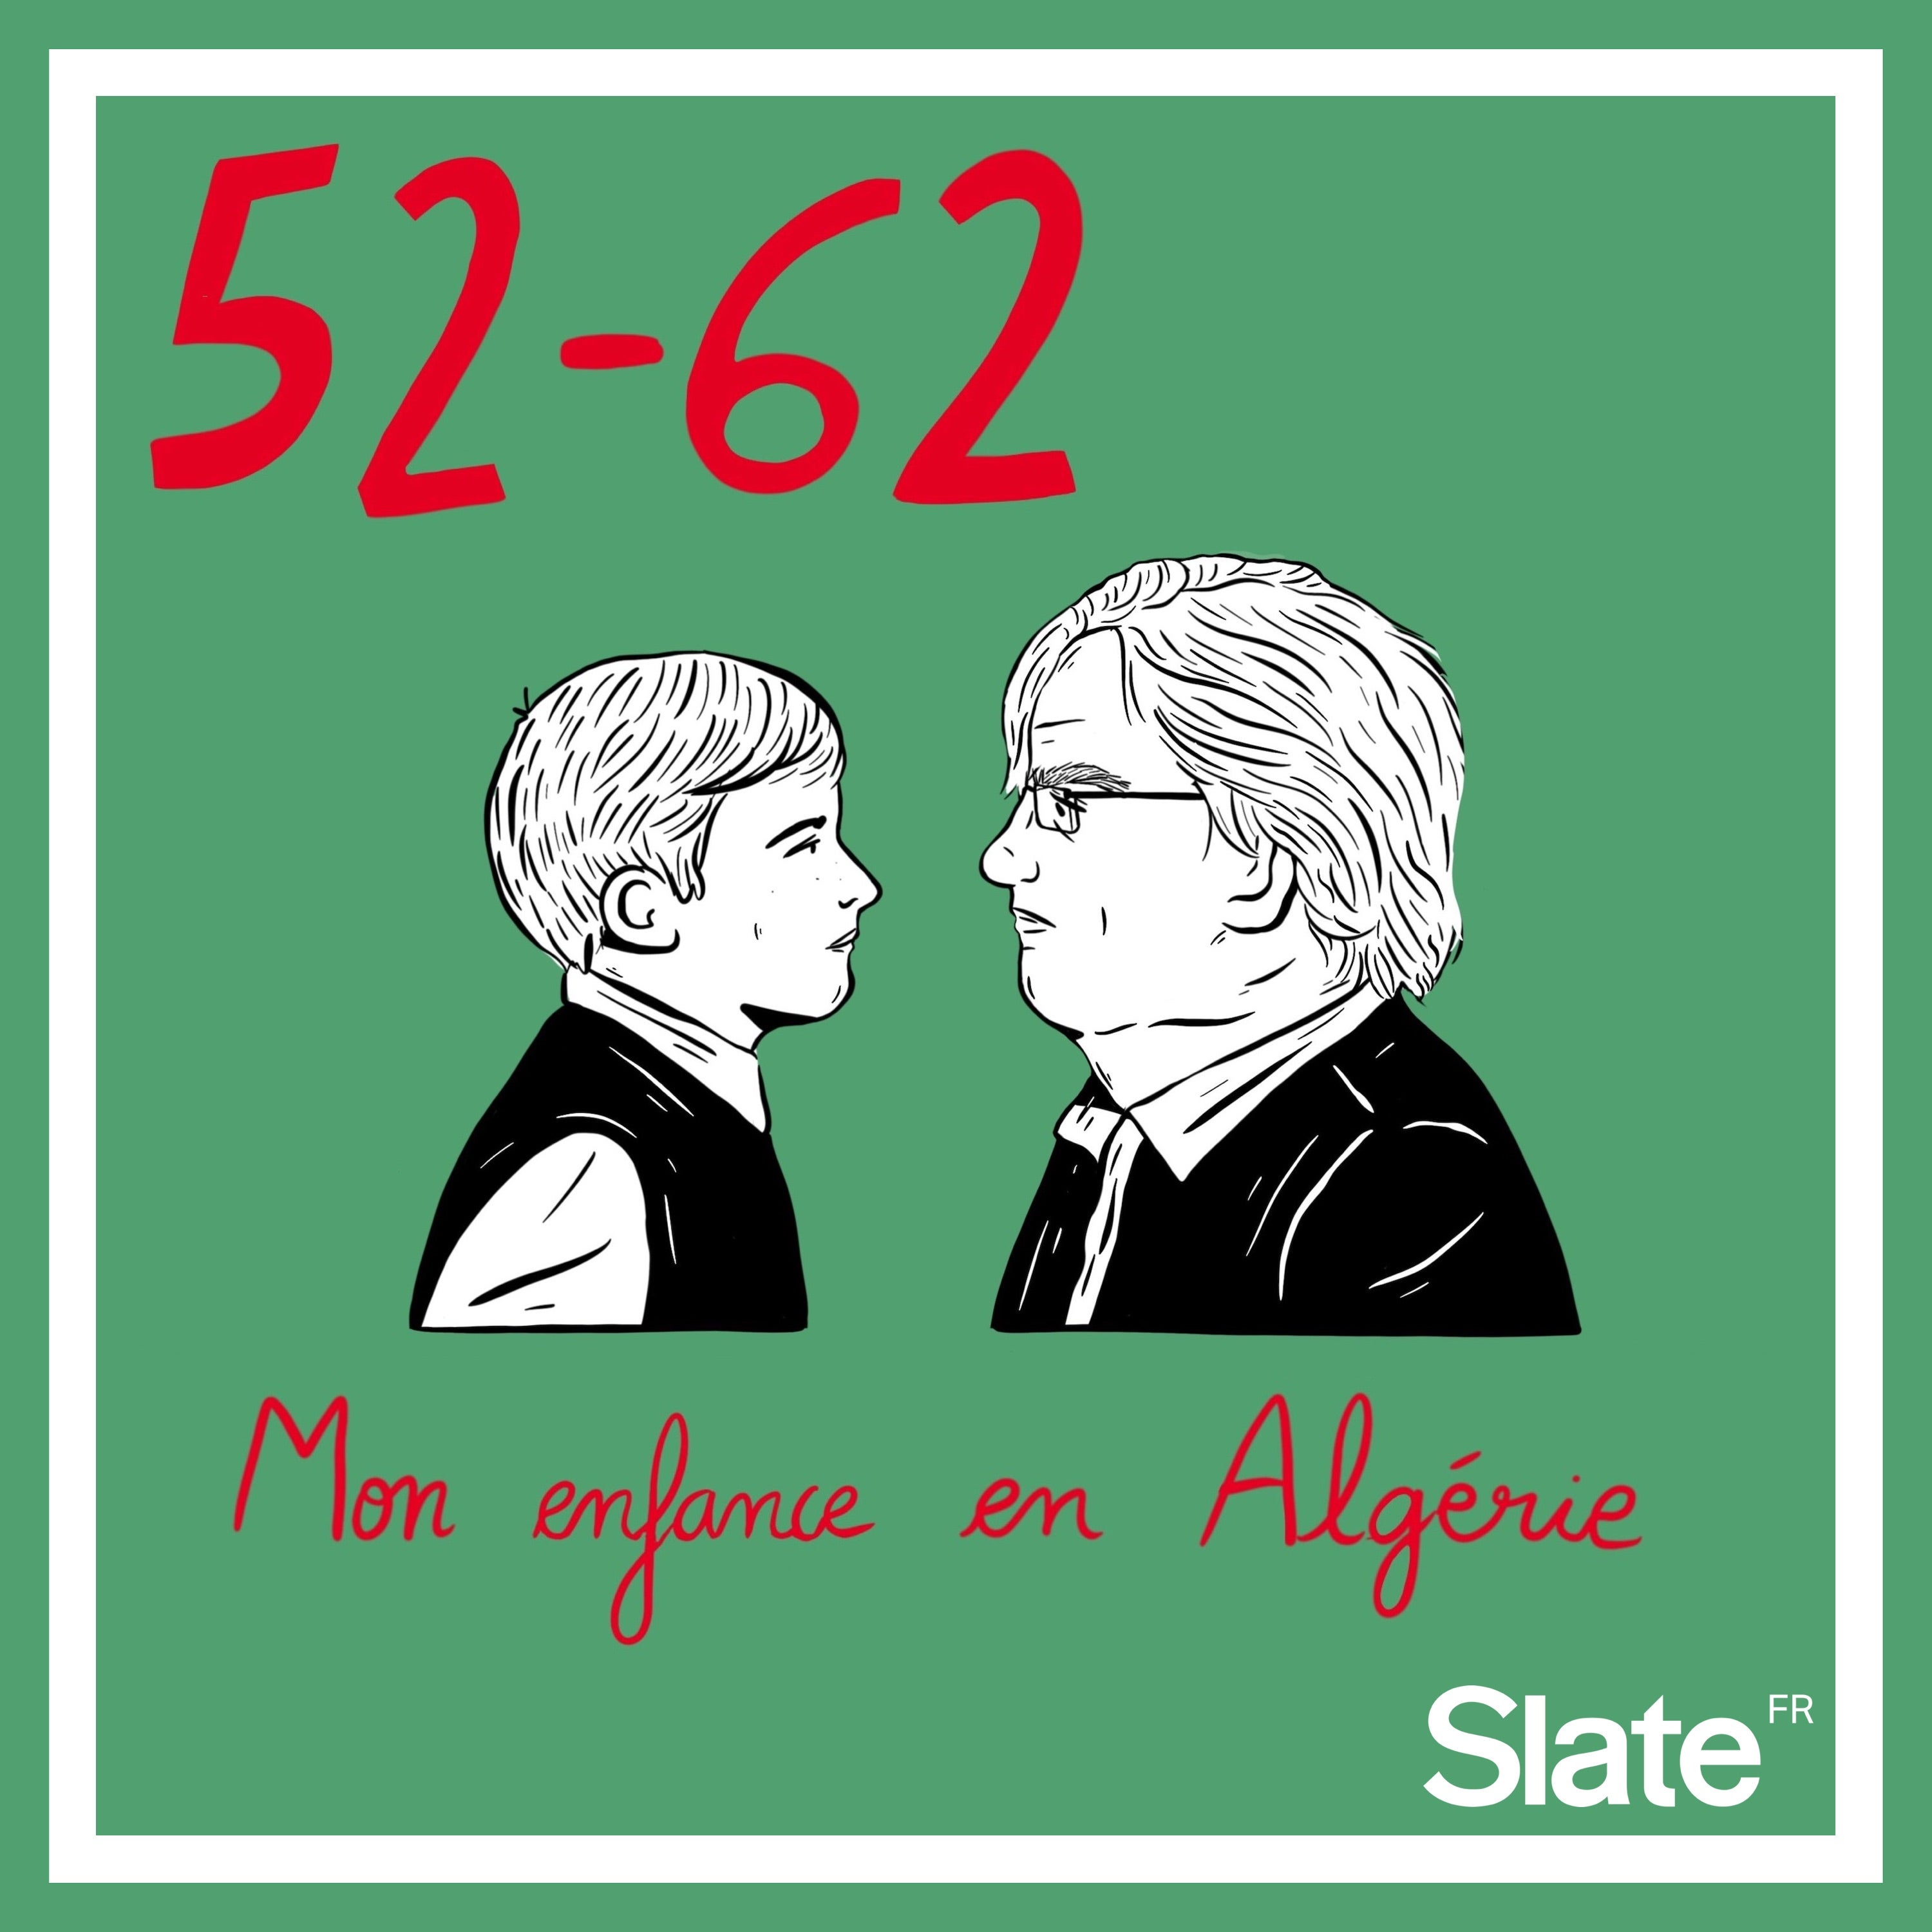 52-62, mon enfance en Algérie: la bande annonce